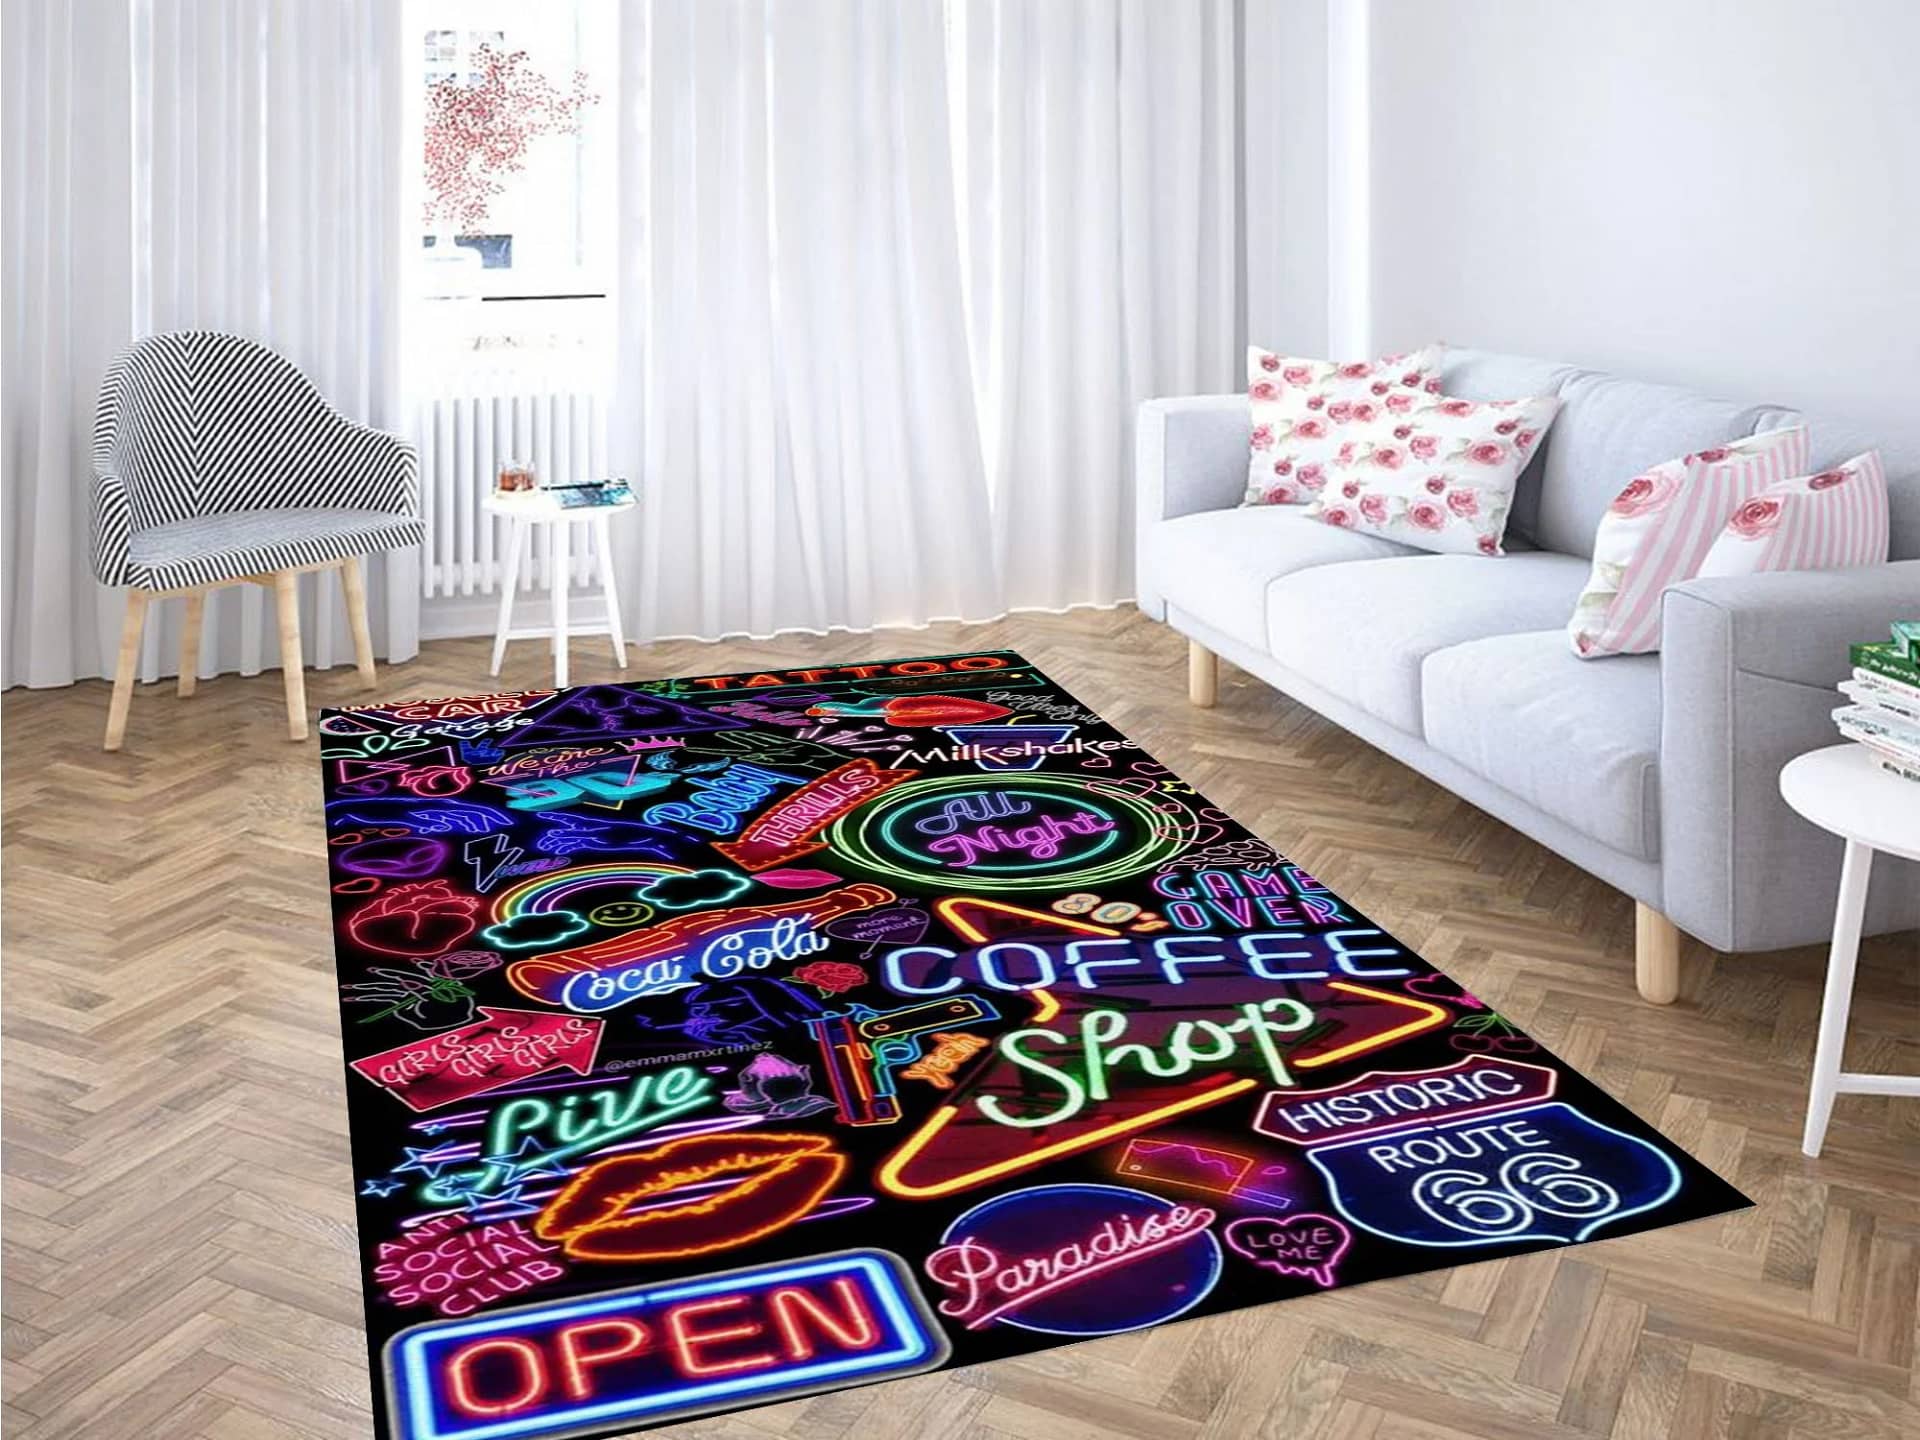 Lovely Images Wallpaper Carpet Rug